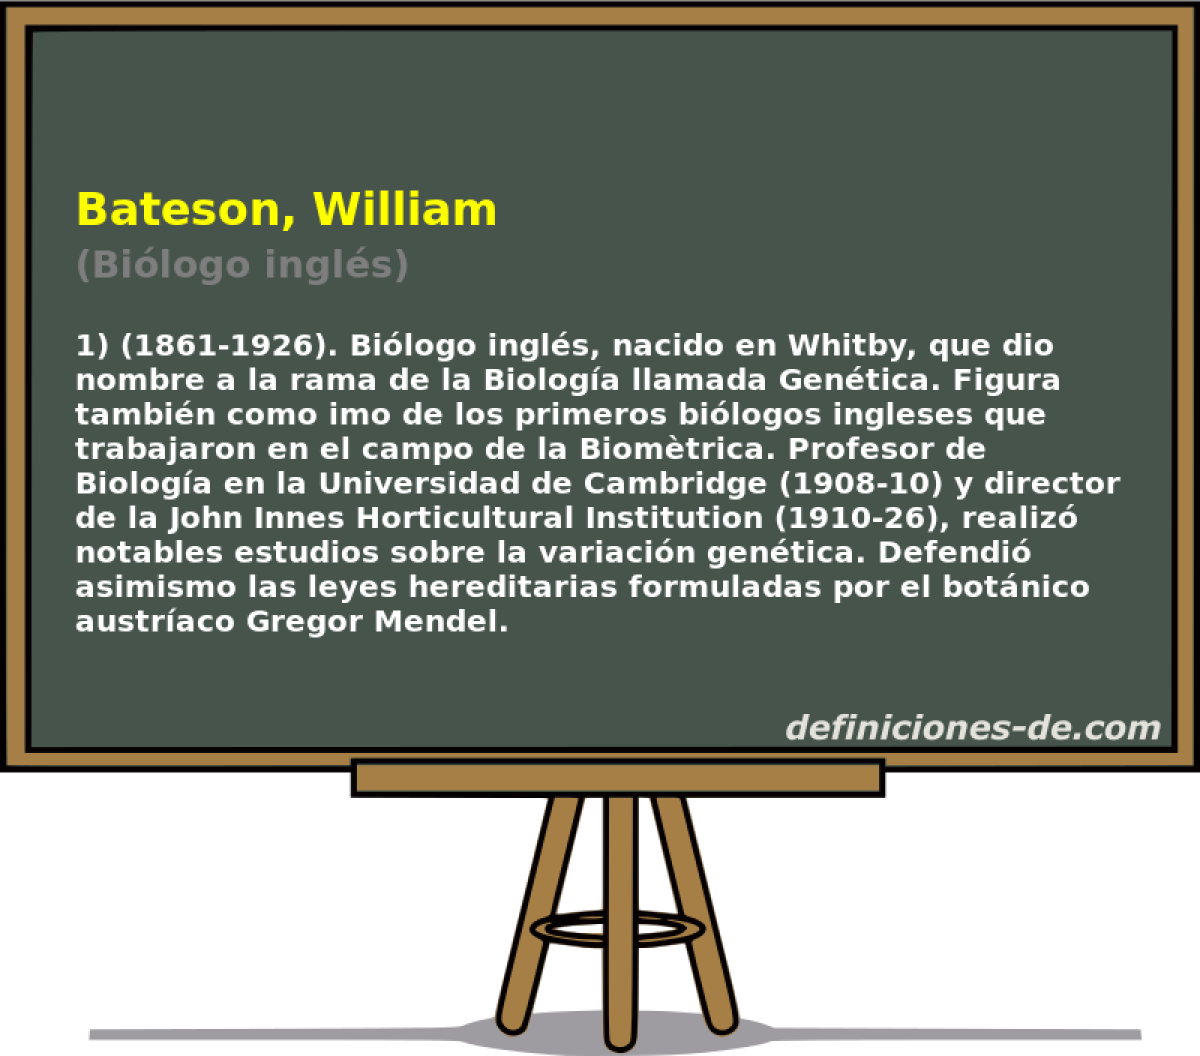 Bateson, William (Bilogo ingls)